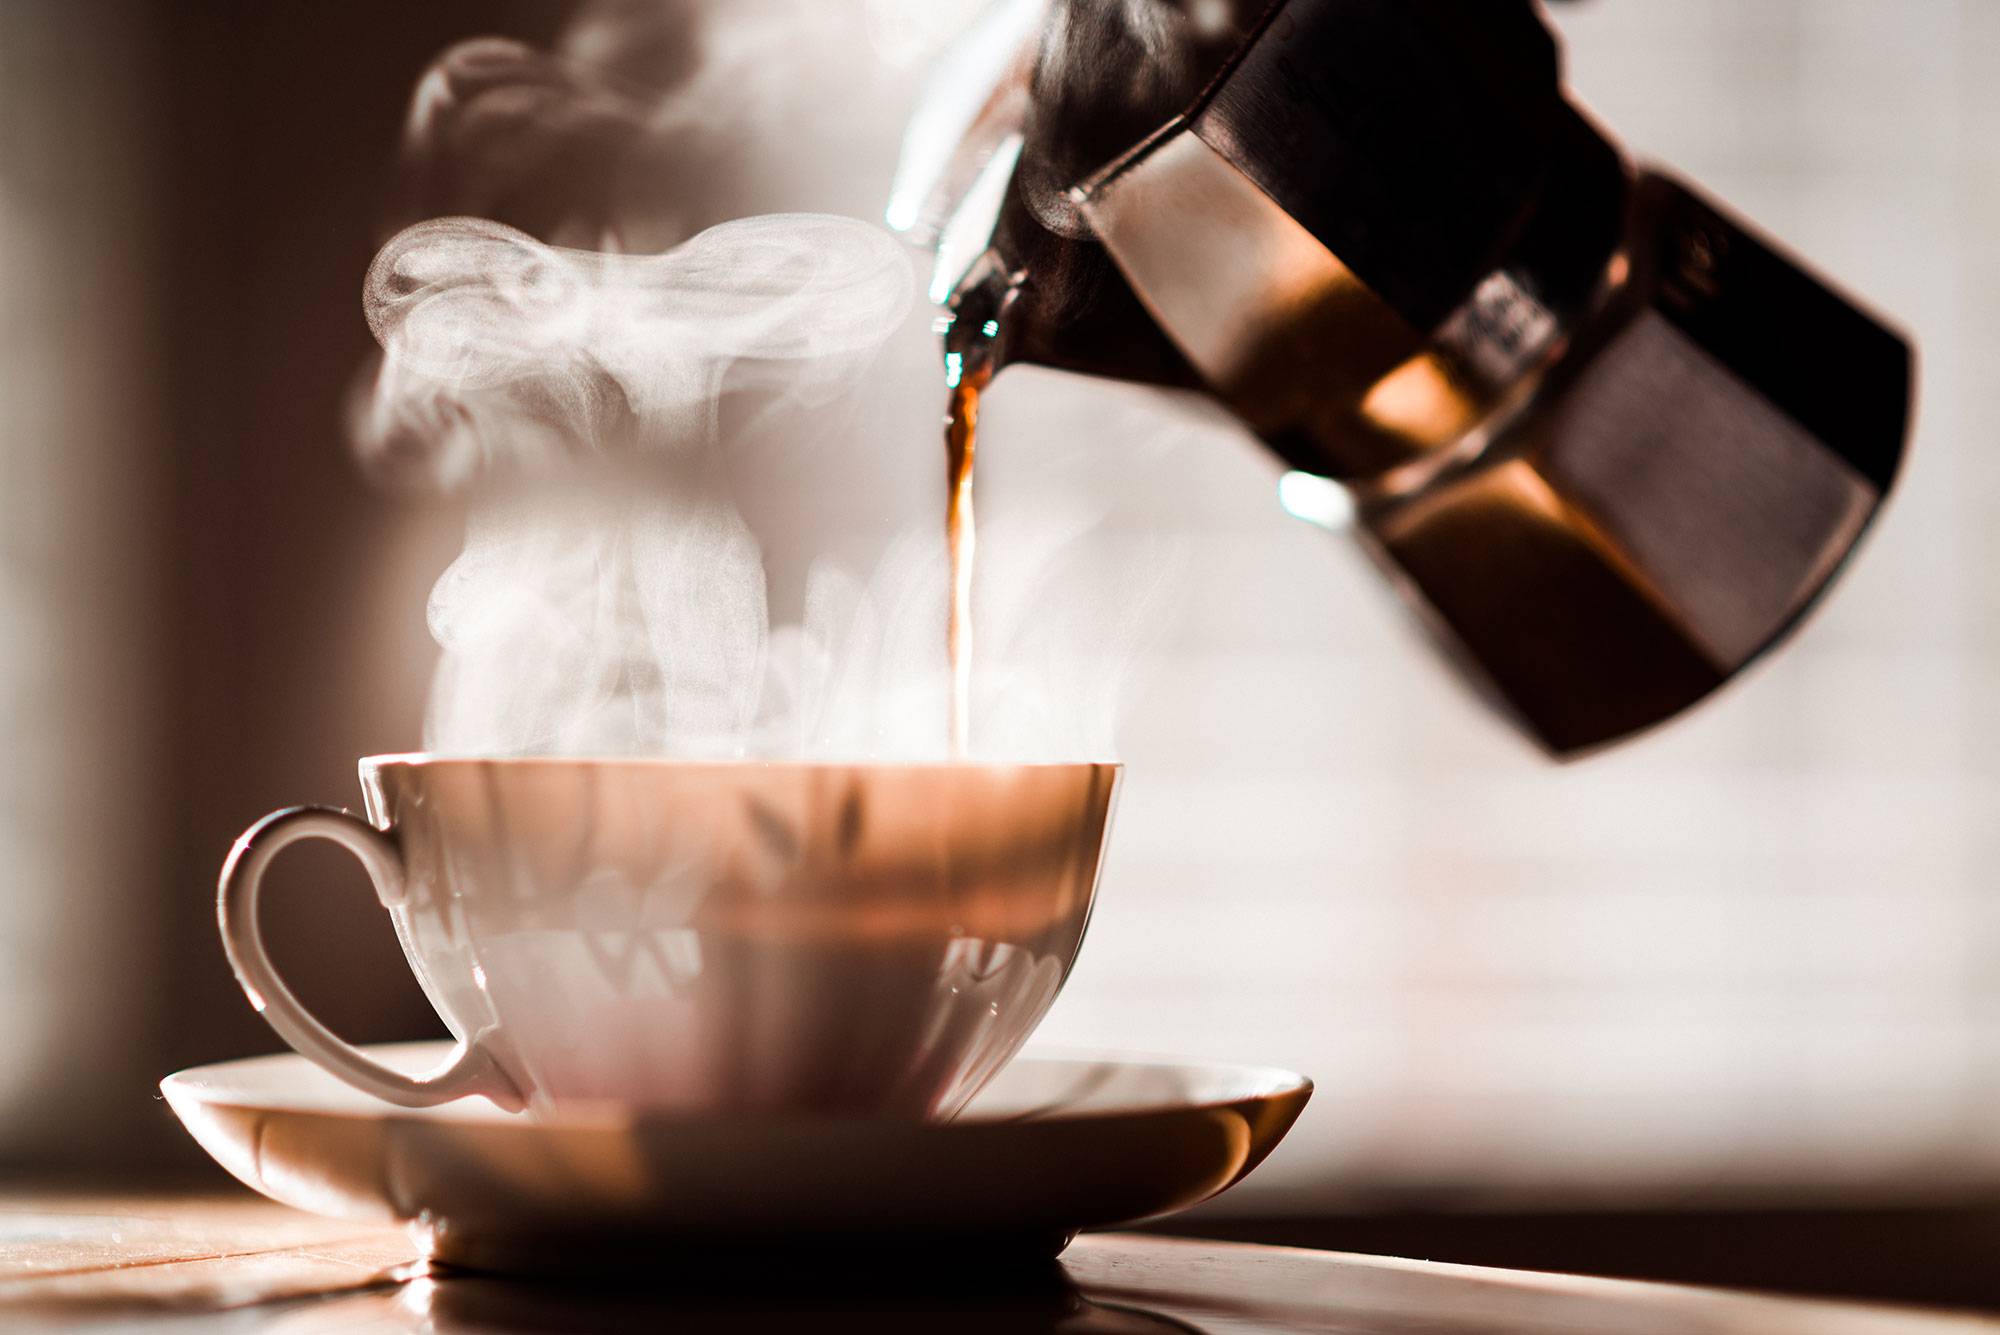 Кофе романо: понятие и классический рецепт приготовления